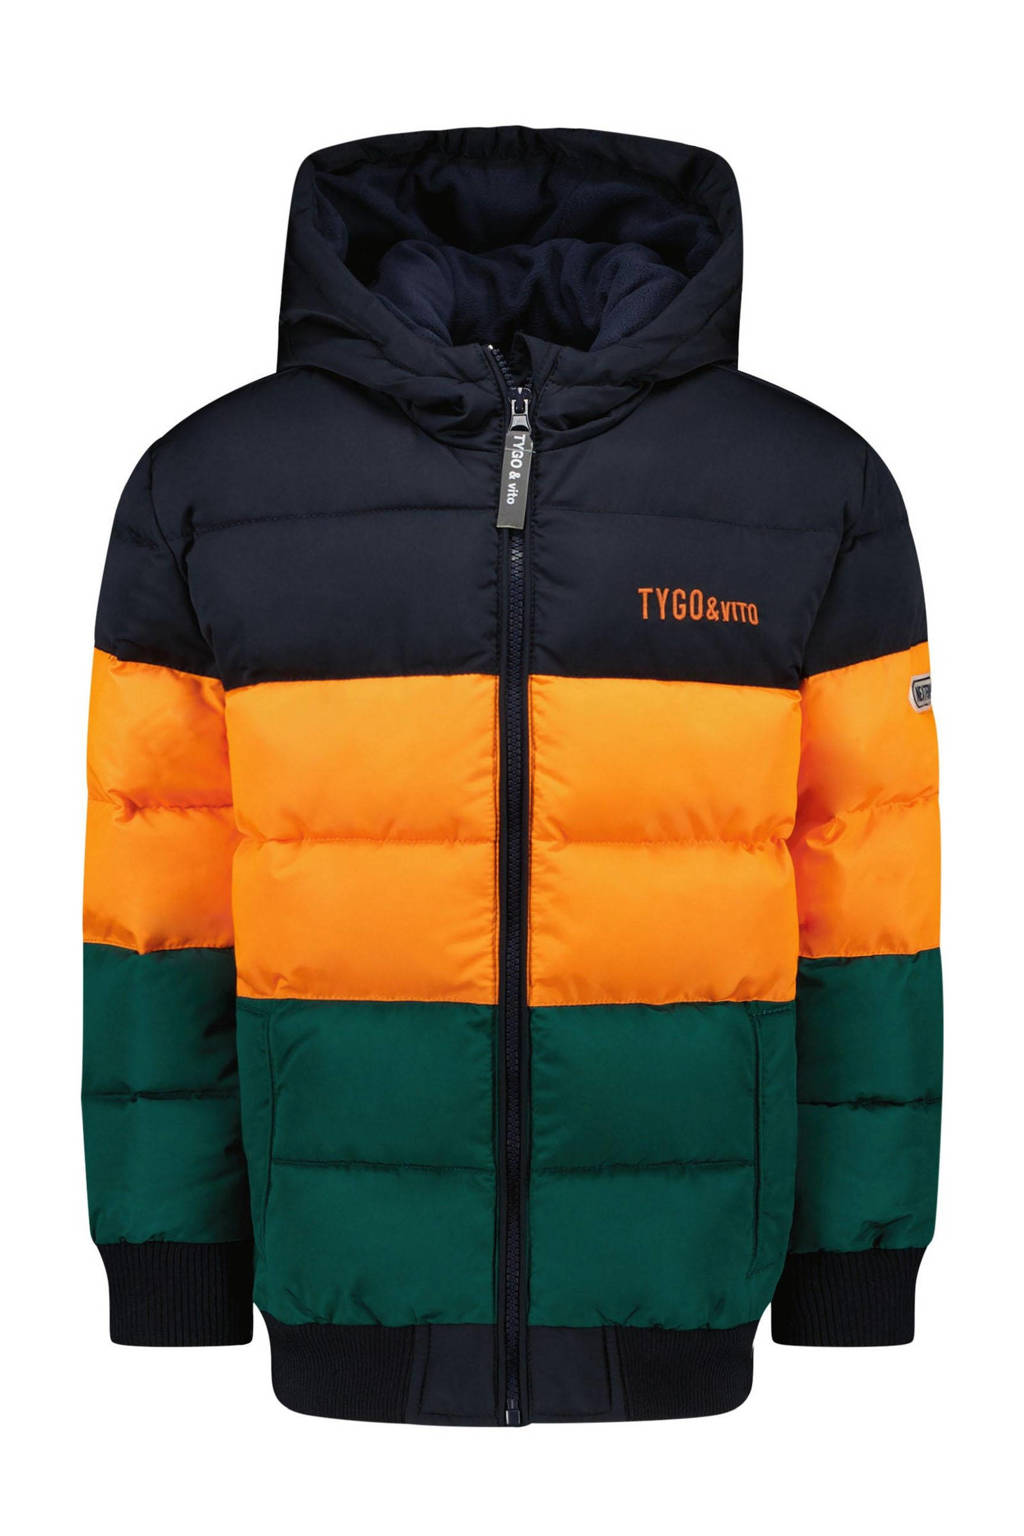 TYGO & vito gewatteerde winterjas van gerecycled polyester donkerblauw/oranje/groen